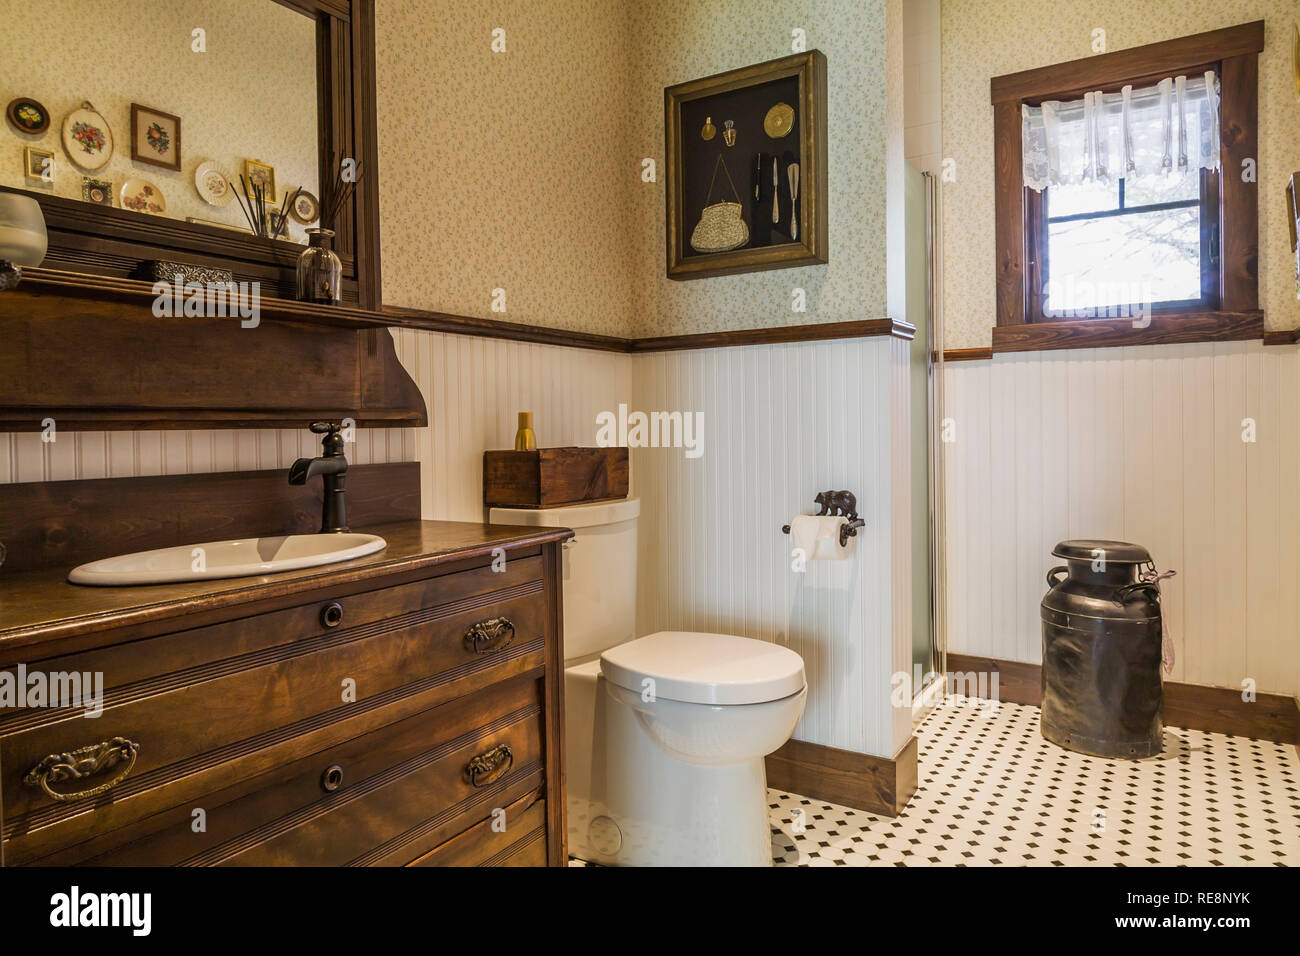 Salle de bains avec meuble en bois ancien cabinet lavabo, toilettes, vieux  seau de collecte de lait à l'intérieur d'un pays certifié LEED Accueil  Photo Stock - Alamy